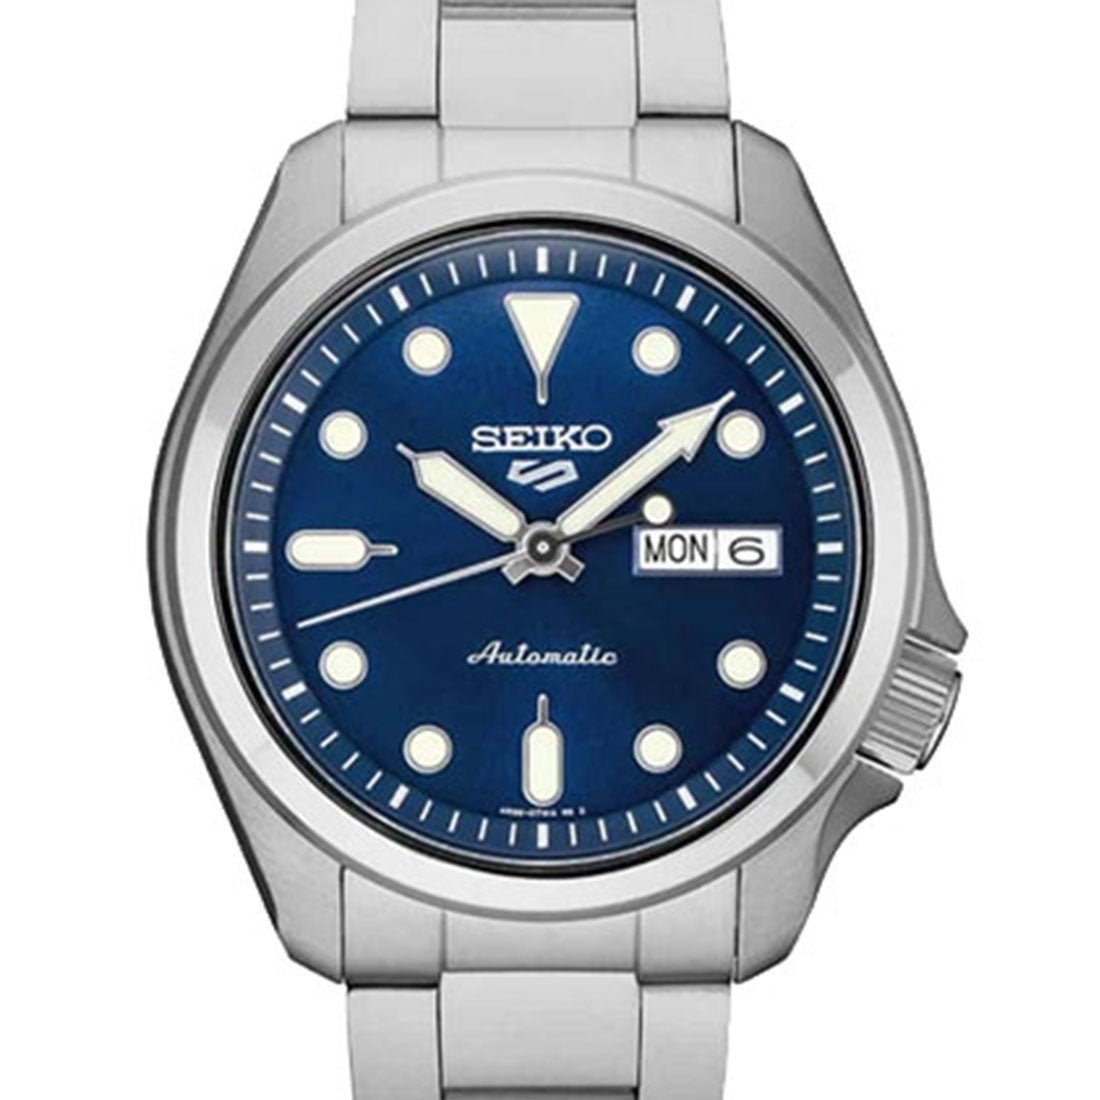 Seiko 5 Sports Automatic Watch SRPE53 SRPE53K SRPE53K1 -Seiko